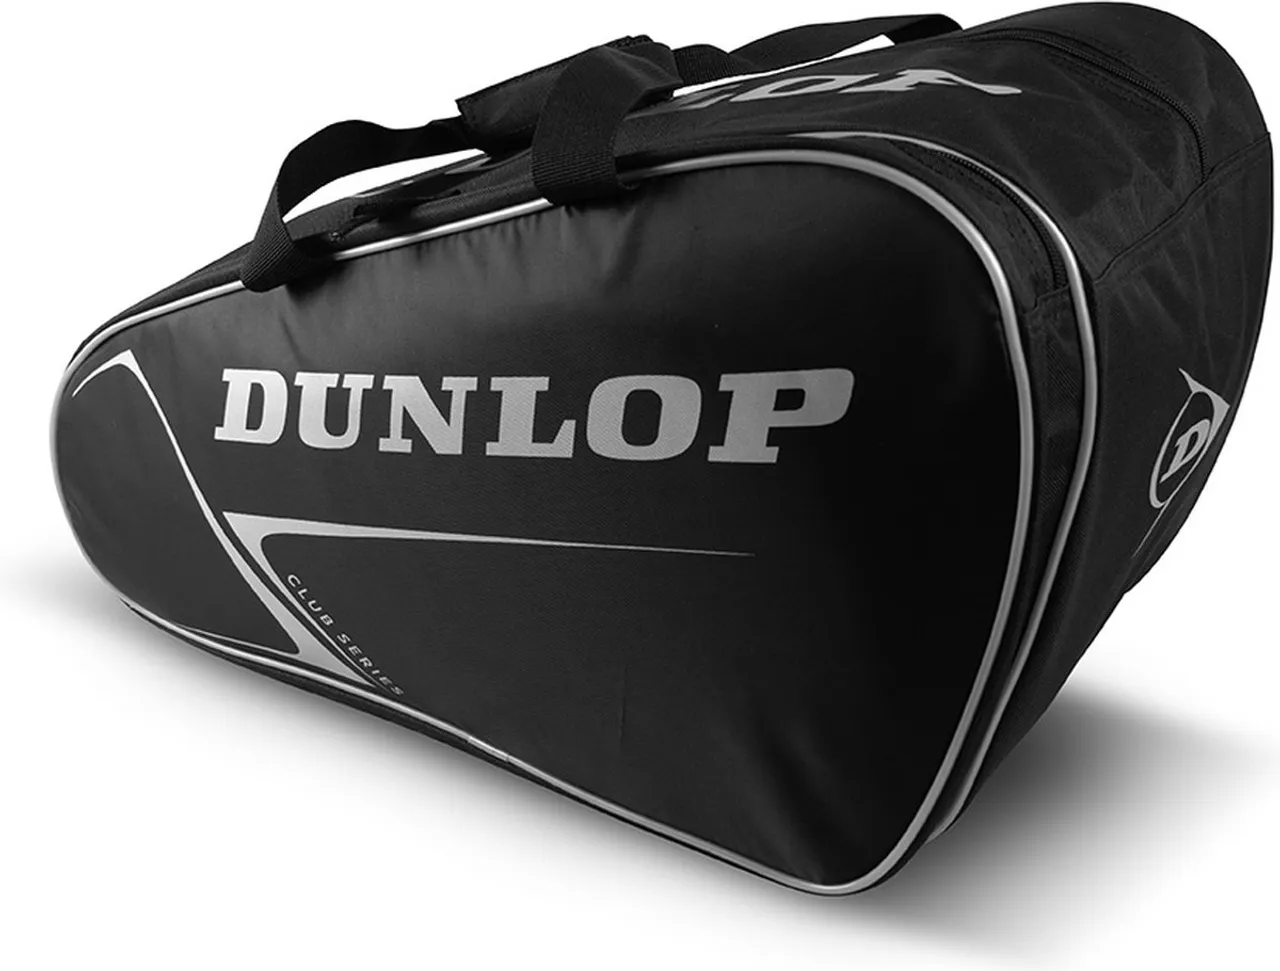 Dunlop - Padeltas - Paletero Club - Black/Silver